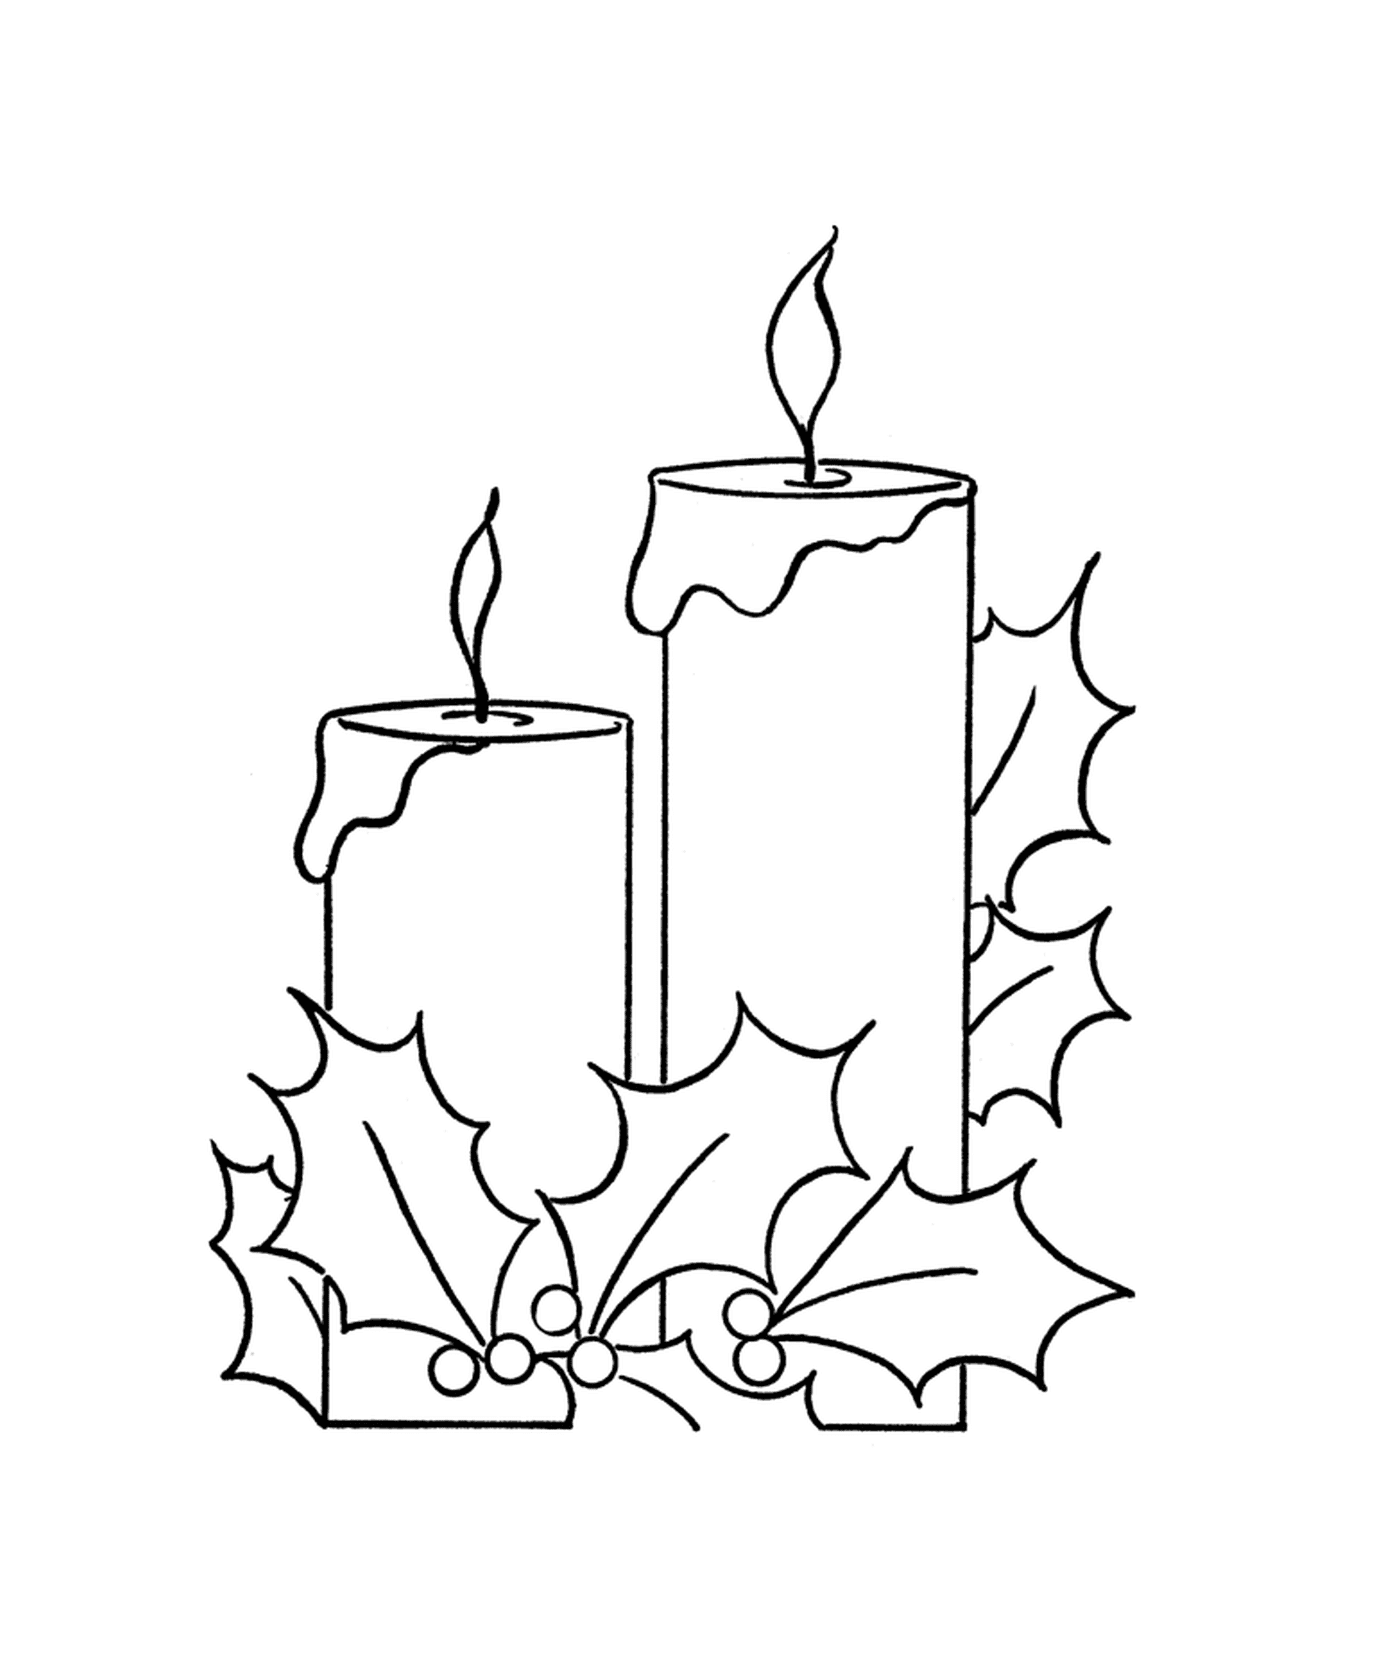  Duas velas acesas com um ramo de azevinho 